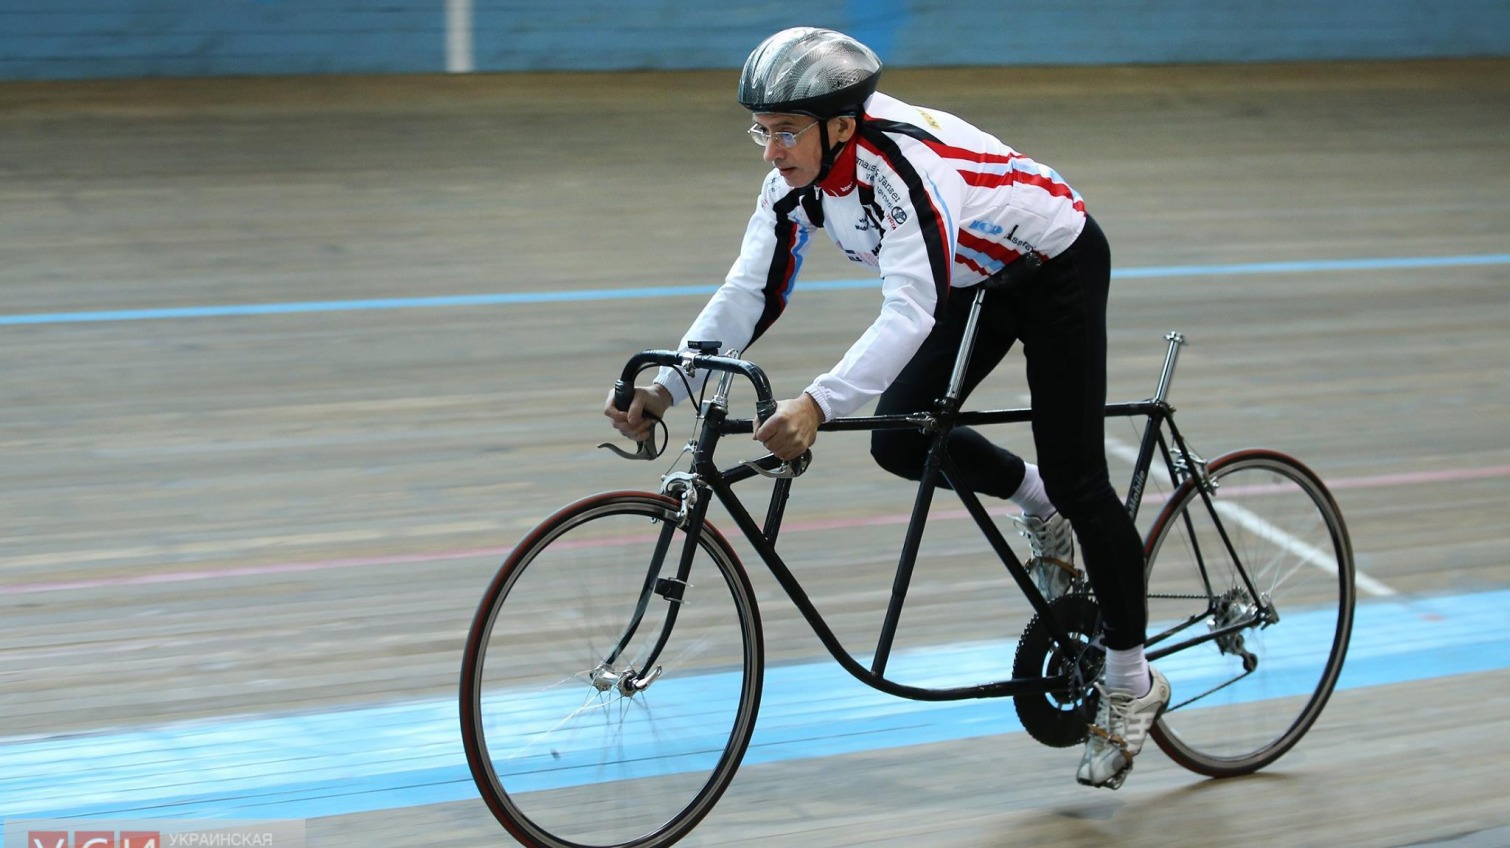 Одесситы изобрели велосипед, развивающий большие скорости при минимальных усилиях спортсмена (фото) «фото»